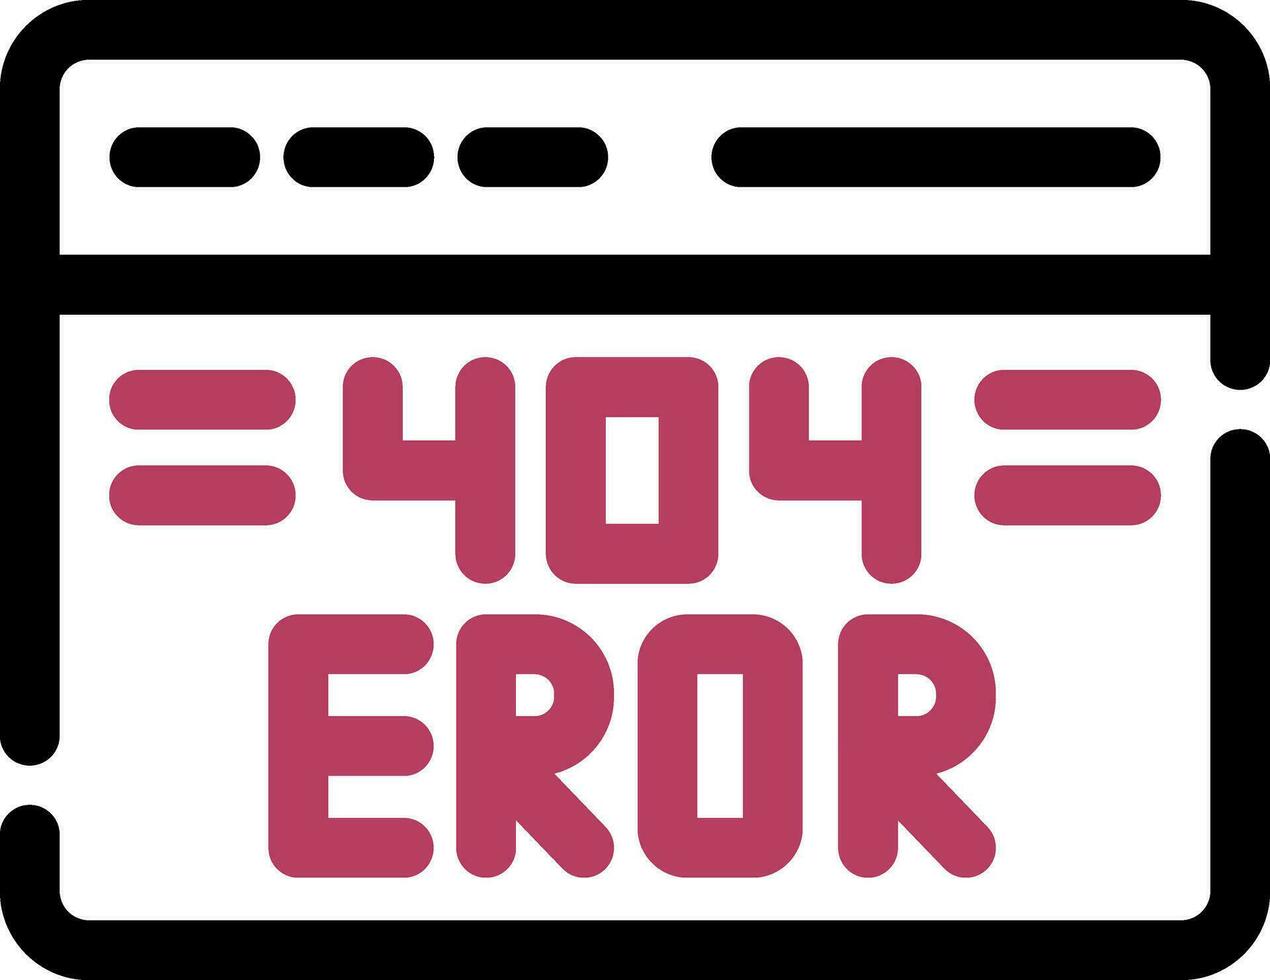 Conception d'icône créative d'erreur 404 vecteur